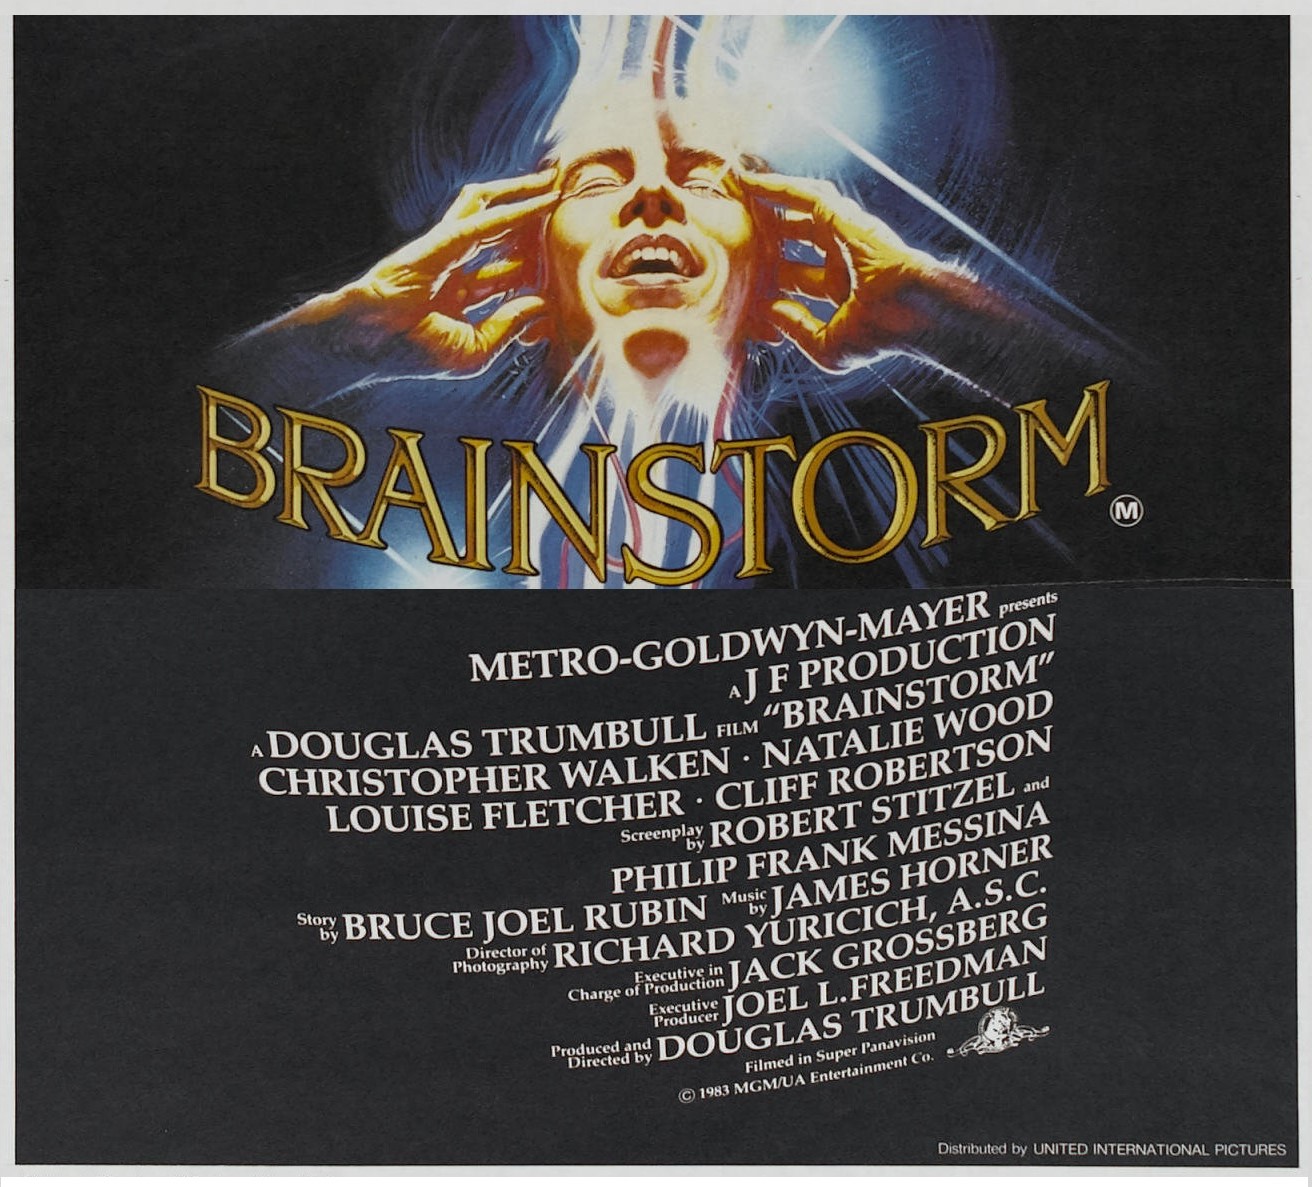 BRAINSTORM (1983)  WEB SITE